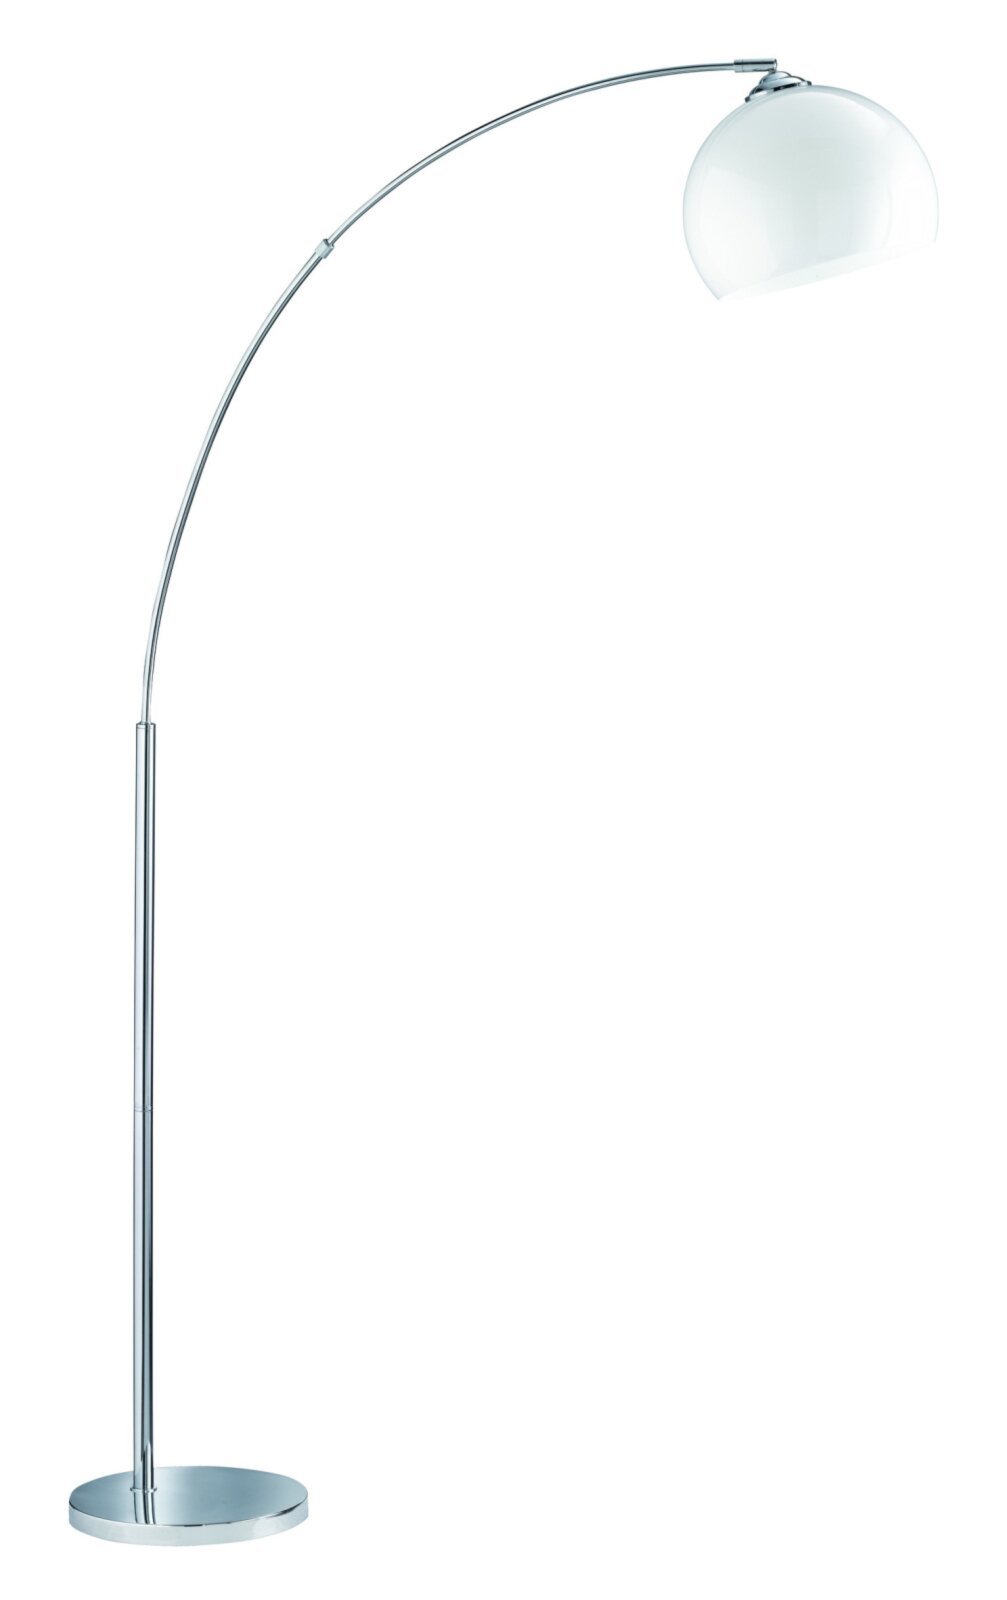 Stehlampe - Chrom-weiß - 180 cm Höhe | Online bei ROLLER kaufen